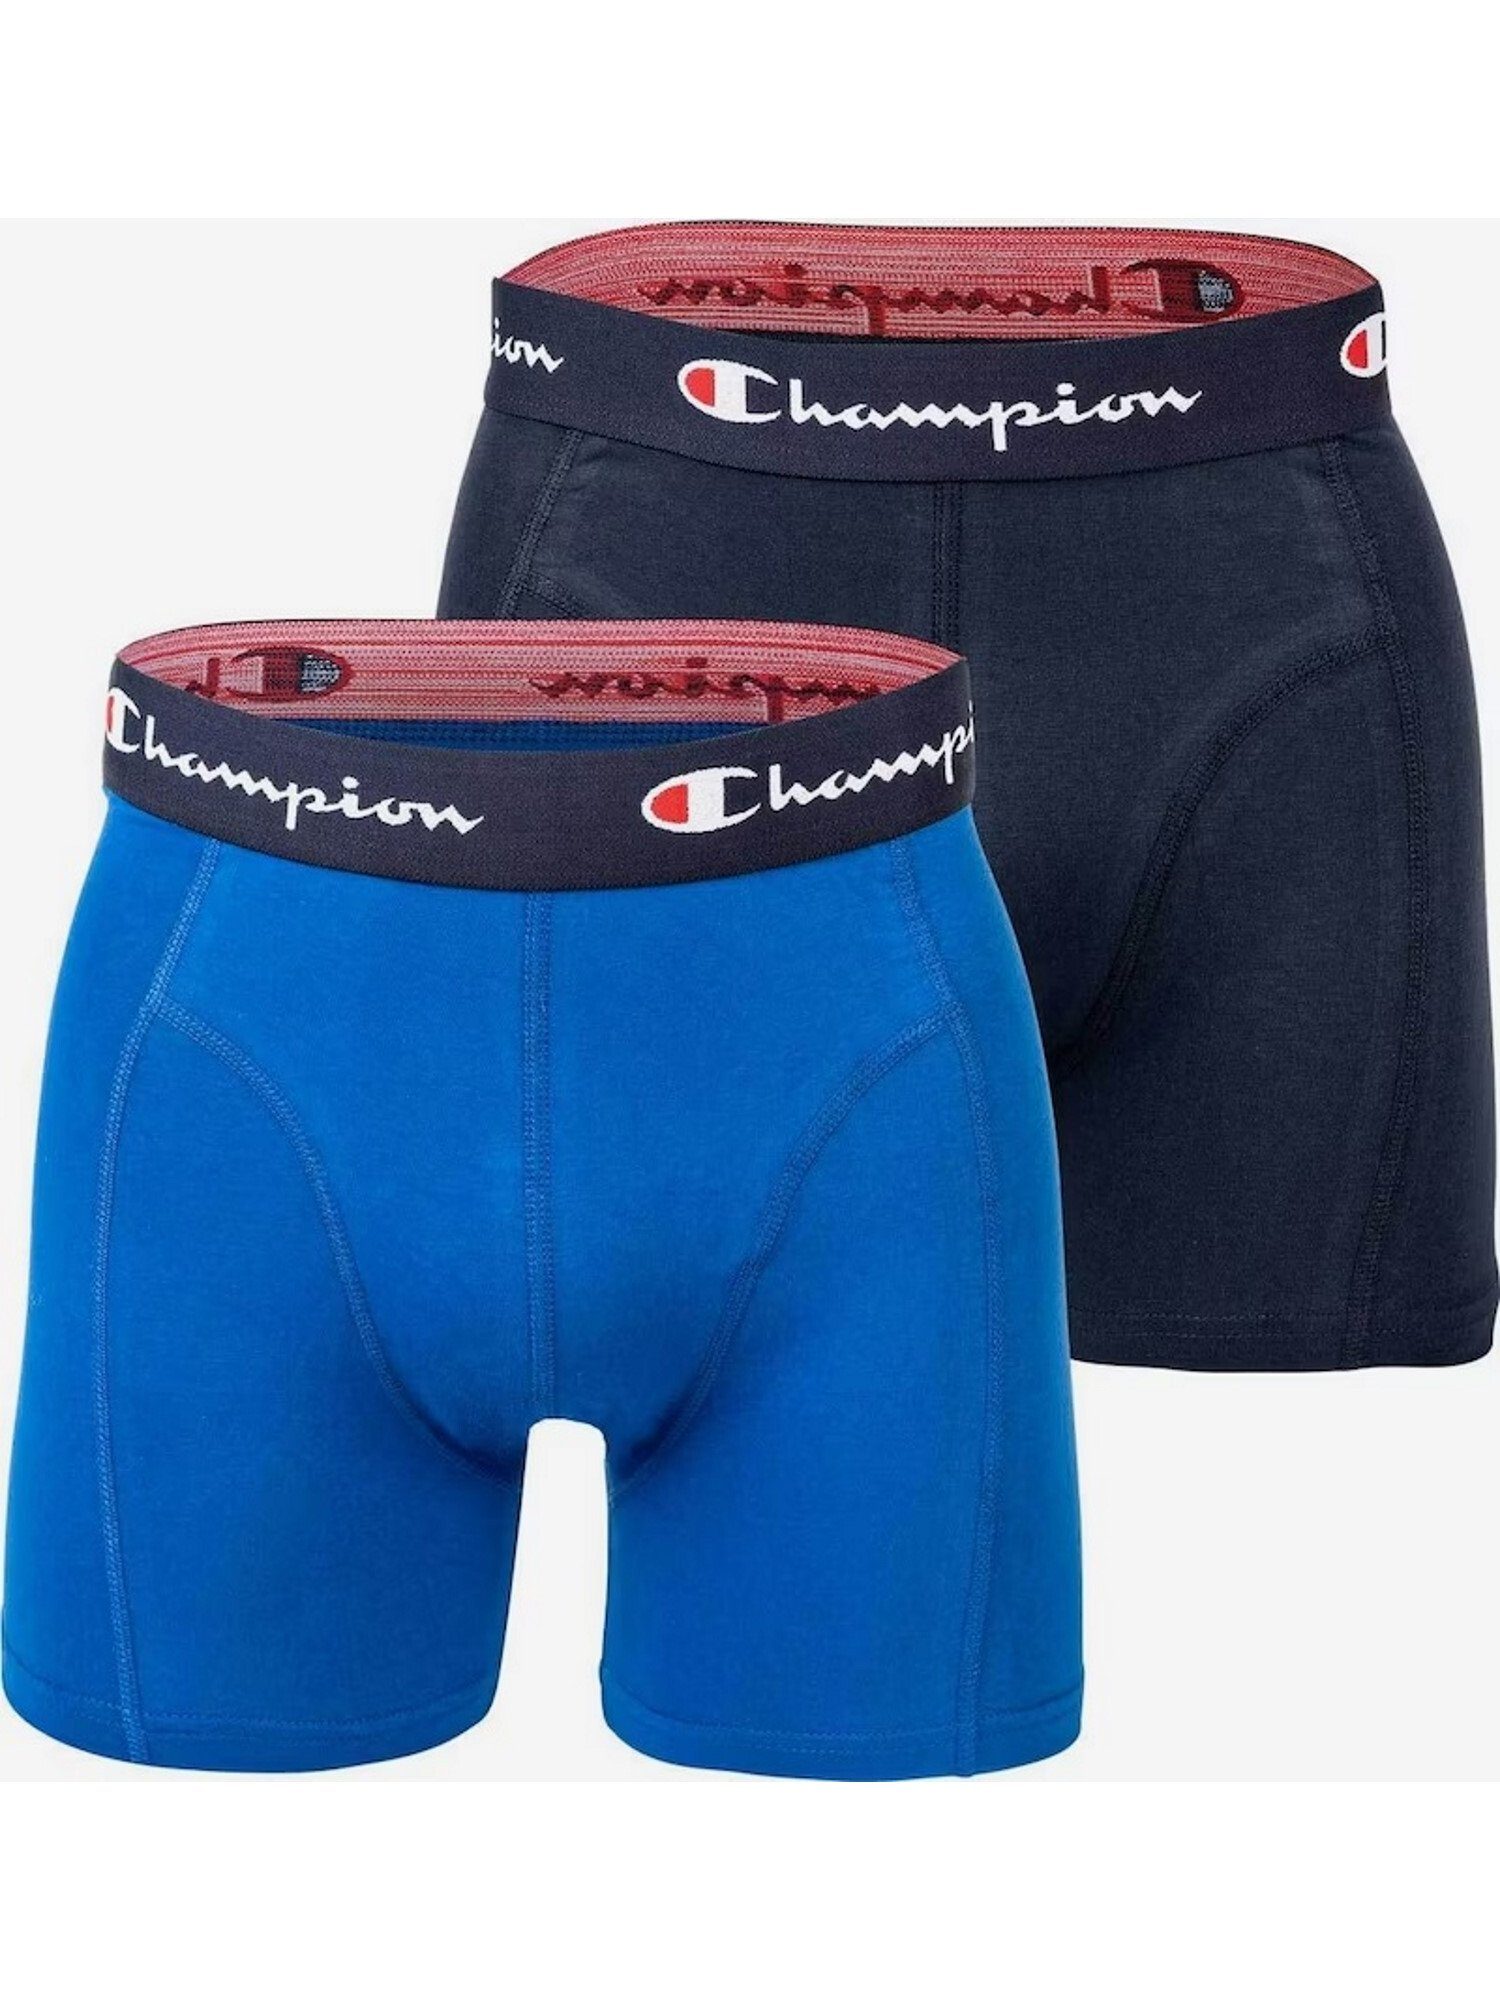 Champion Boxershorts Boxershorts Basic Trunks Doppelpack blau